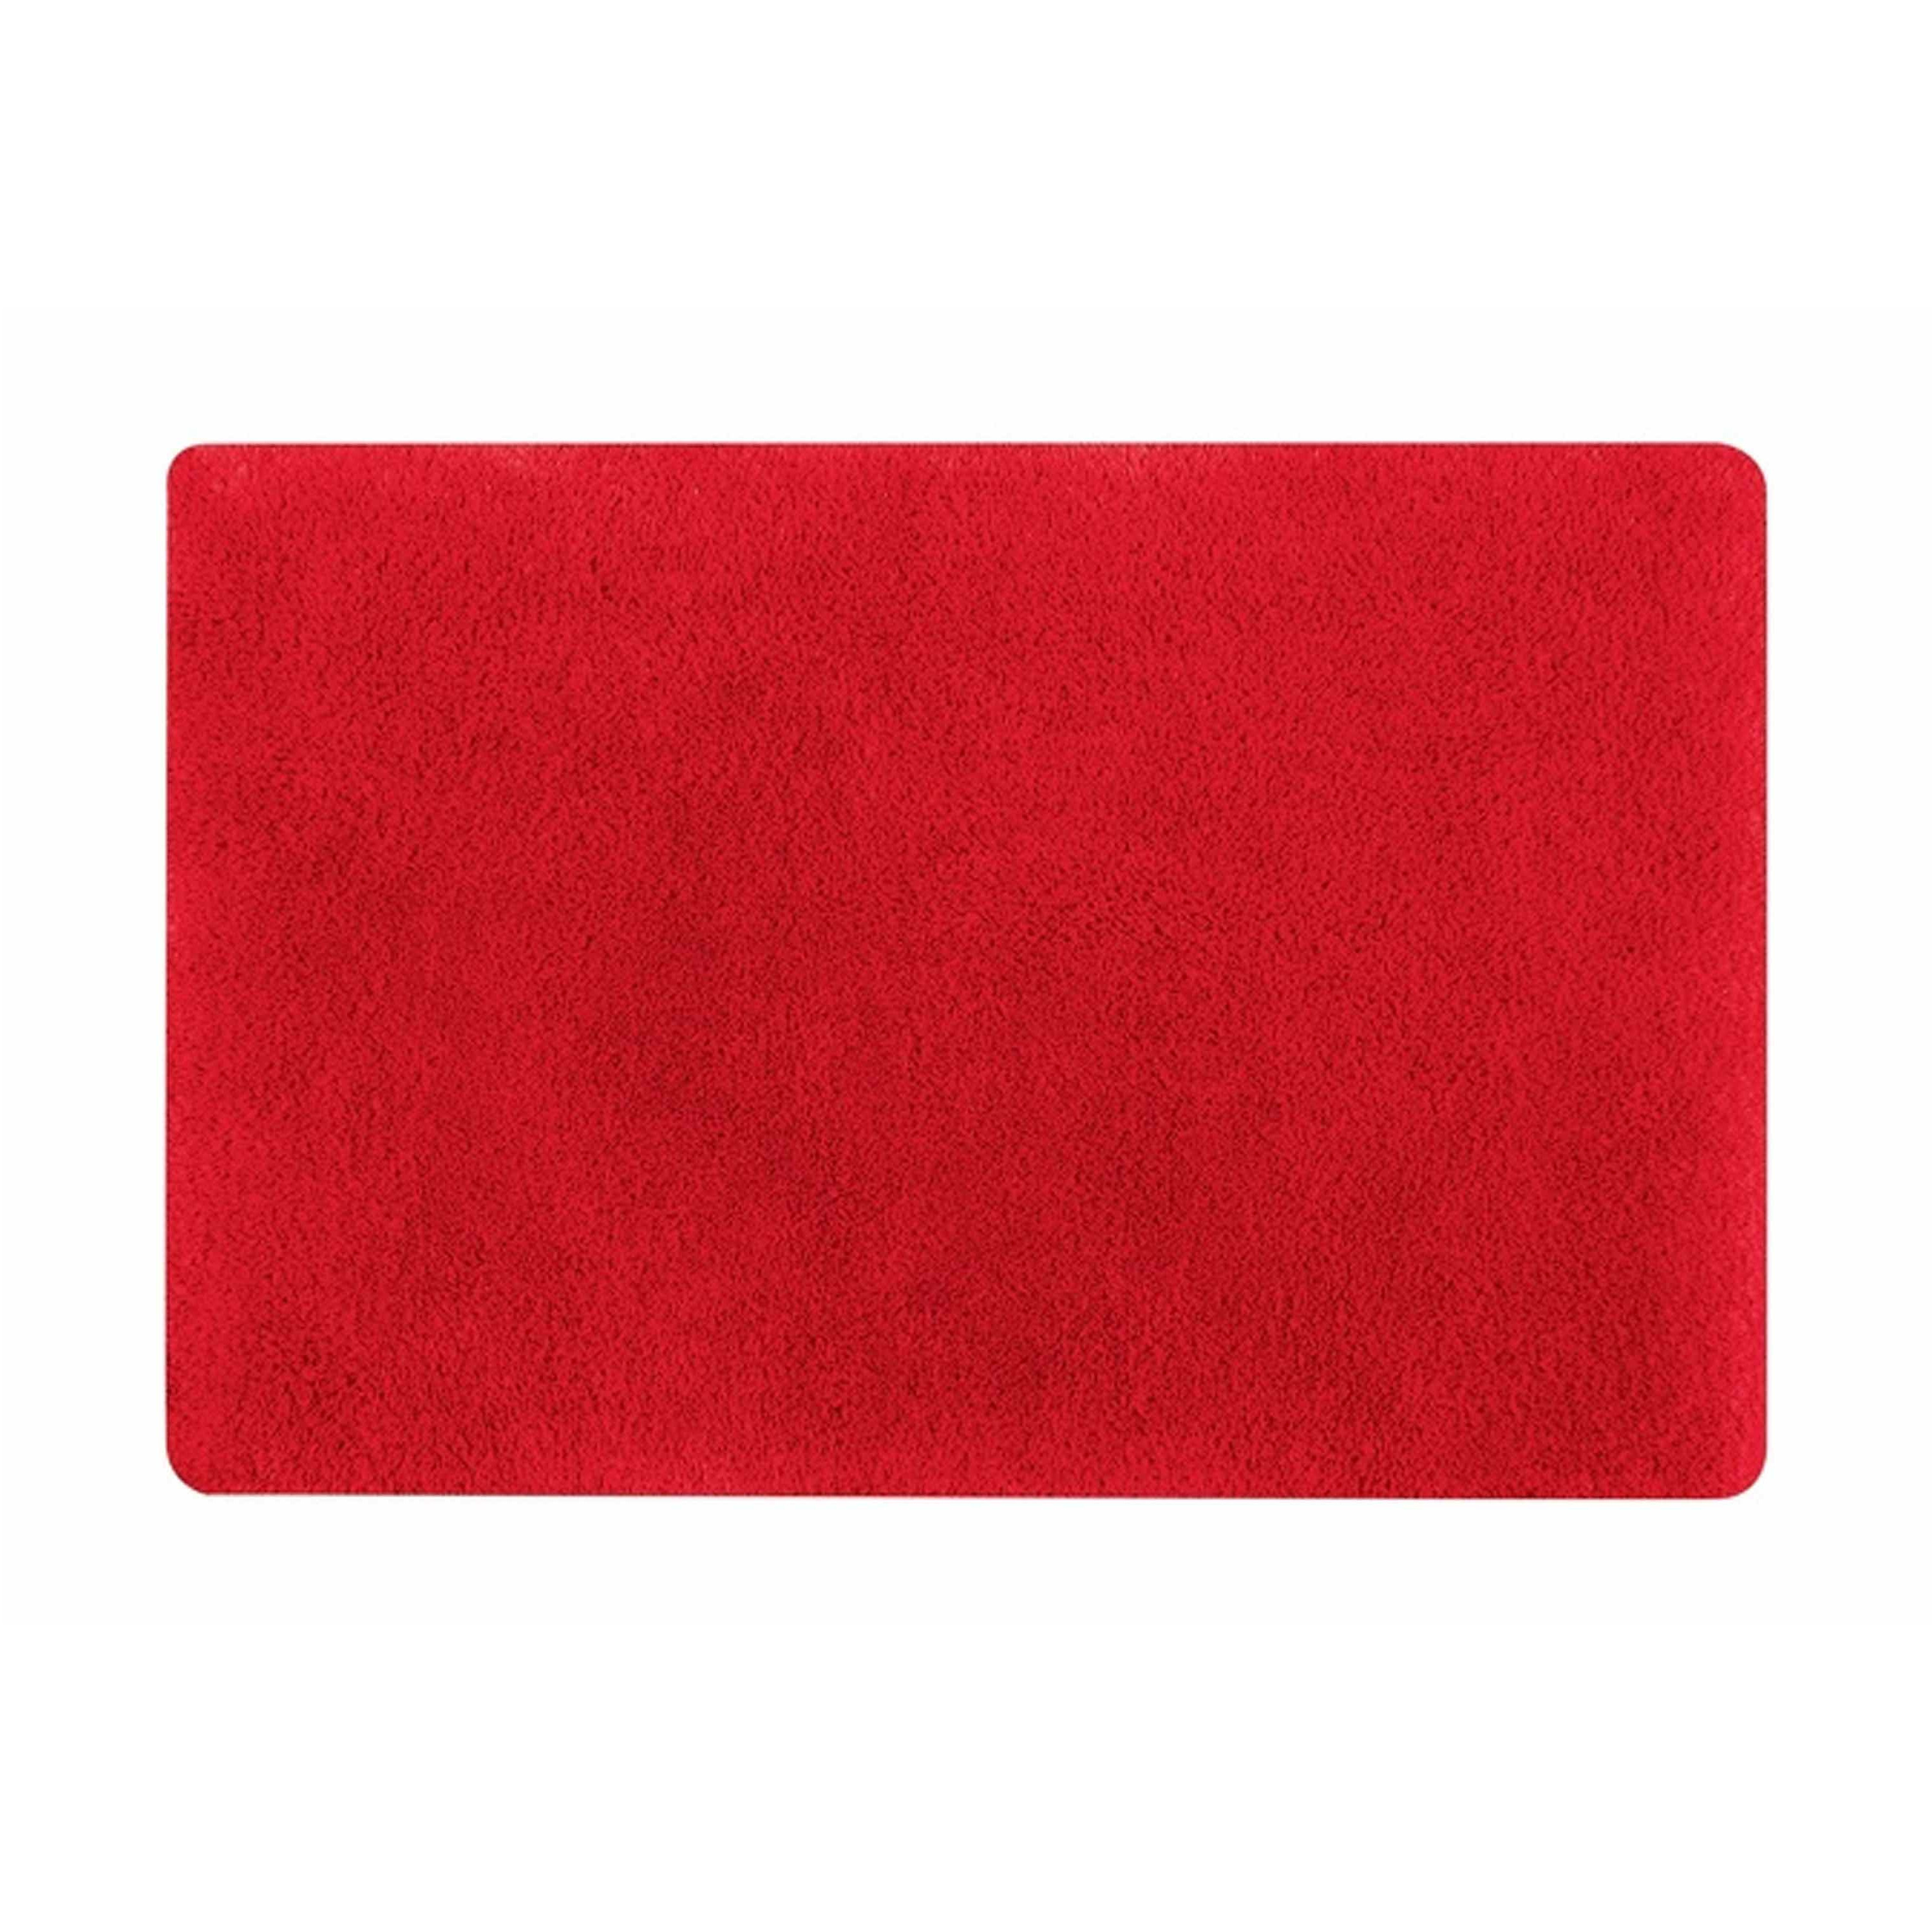 Spirella badkamer vloer kleedje-badmat tapijt hoogpolig en luxe uitvoering rood 50 x 80